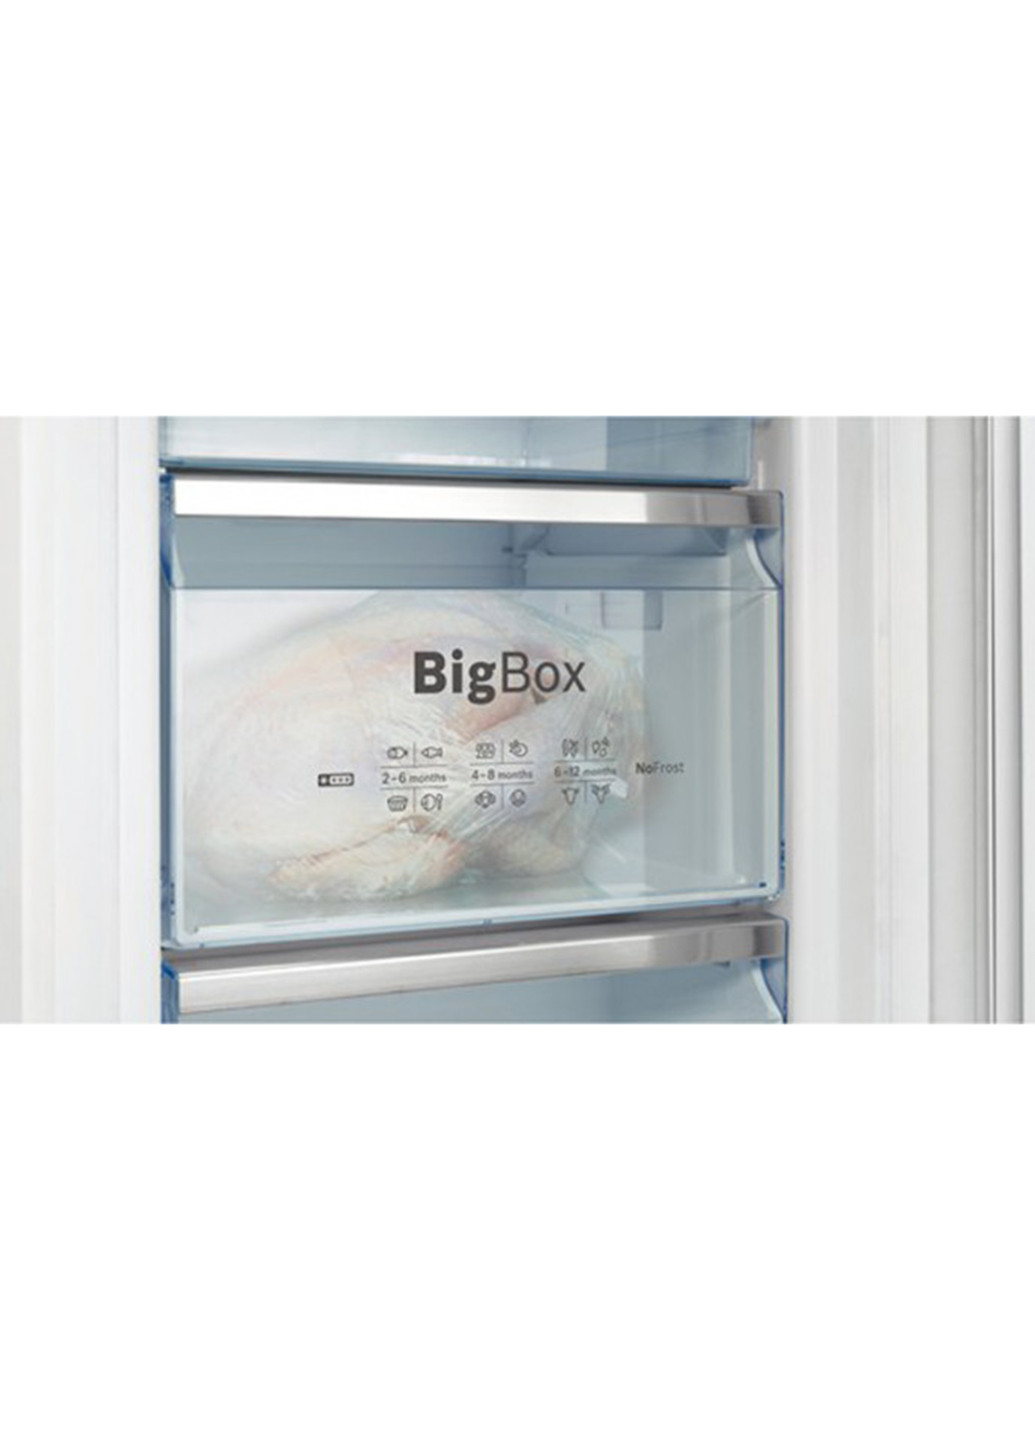 Холодильник Bosch kin86ad30 (133777661)